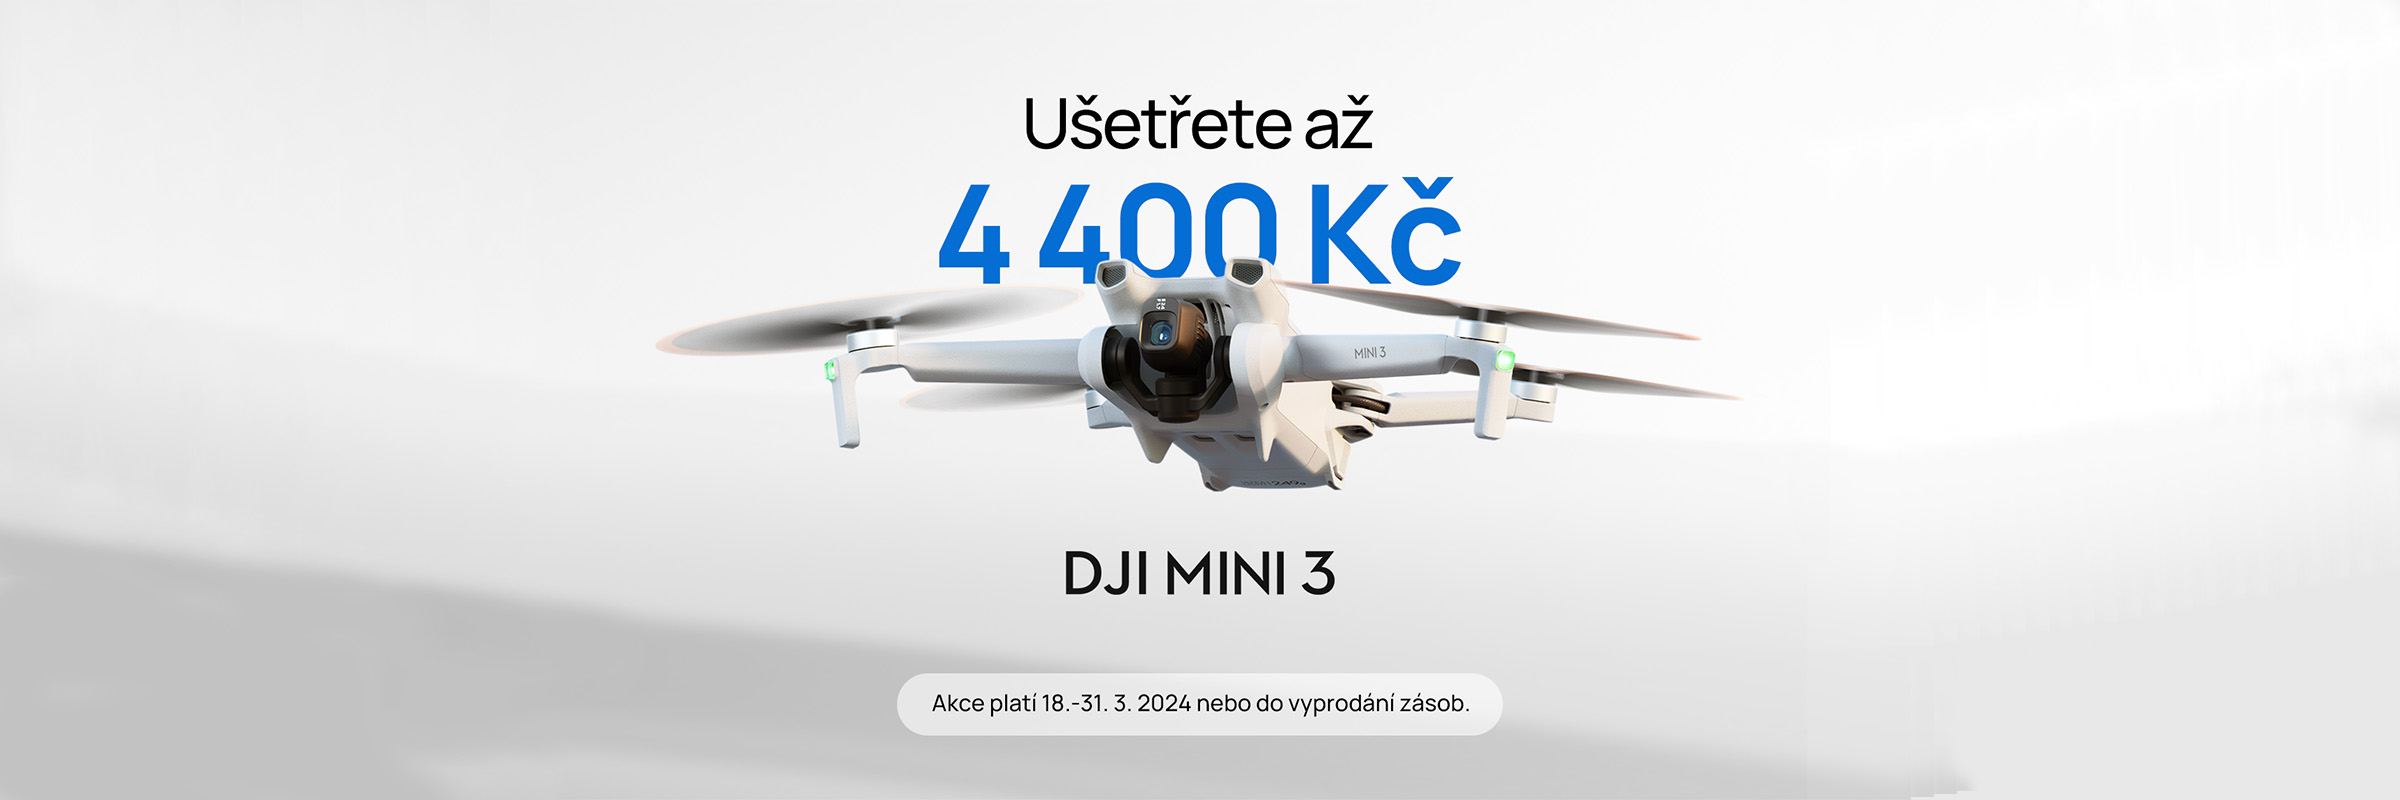 DJI Mini 3 - ušetřete až 4400 Kč